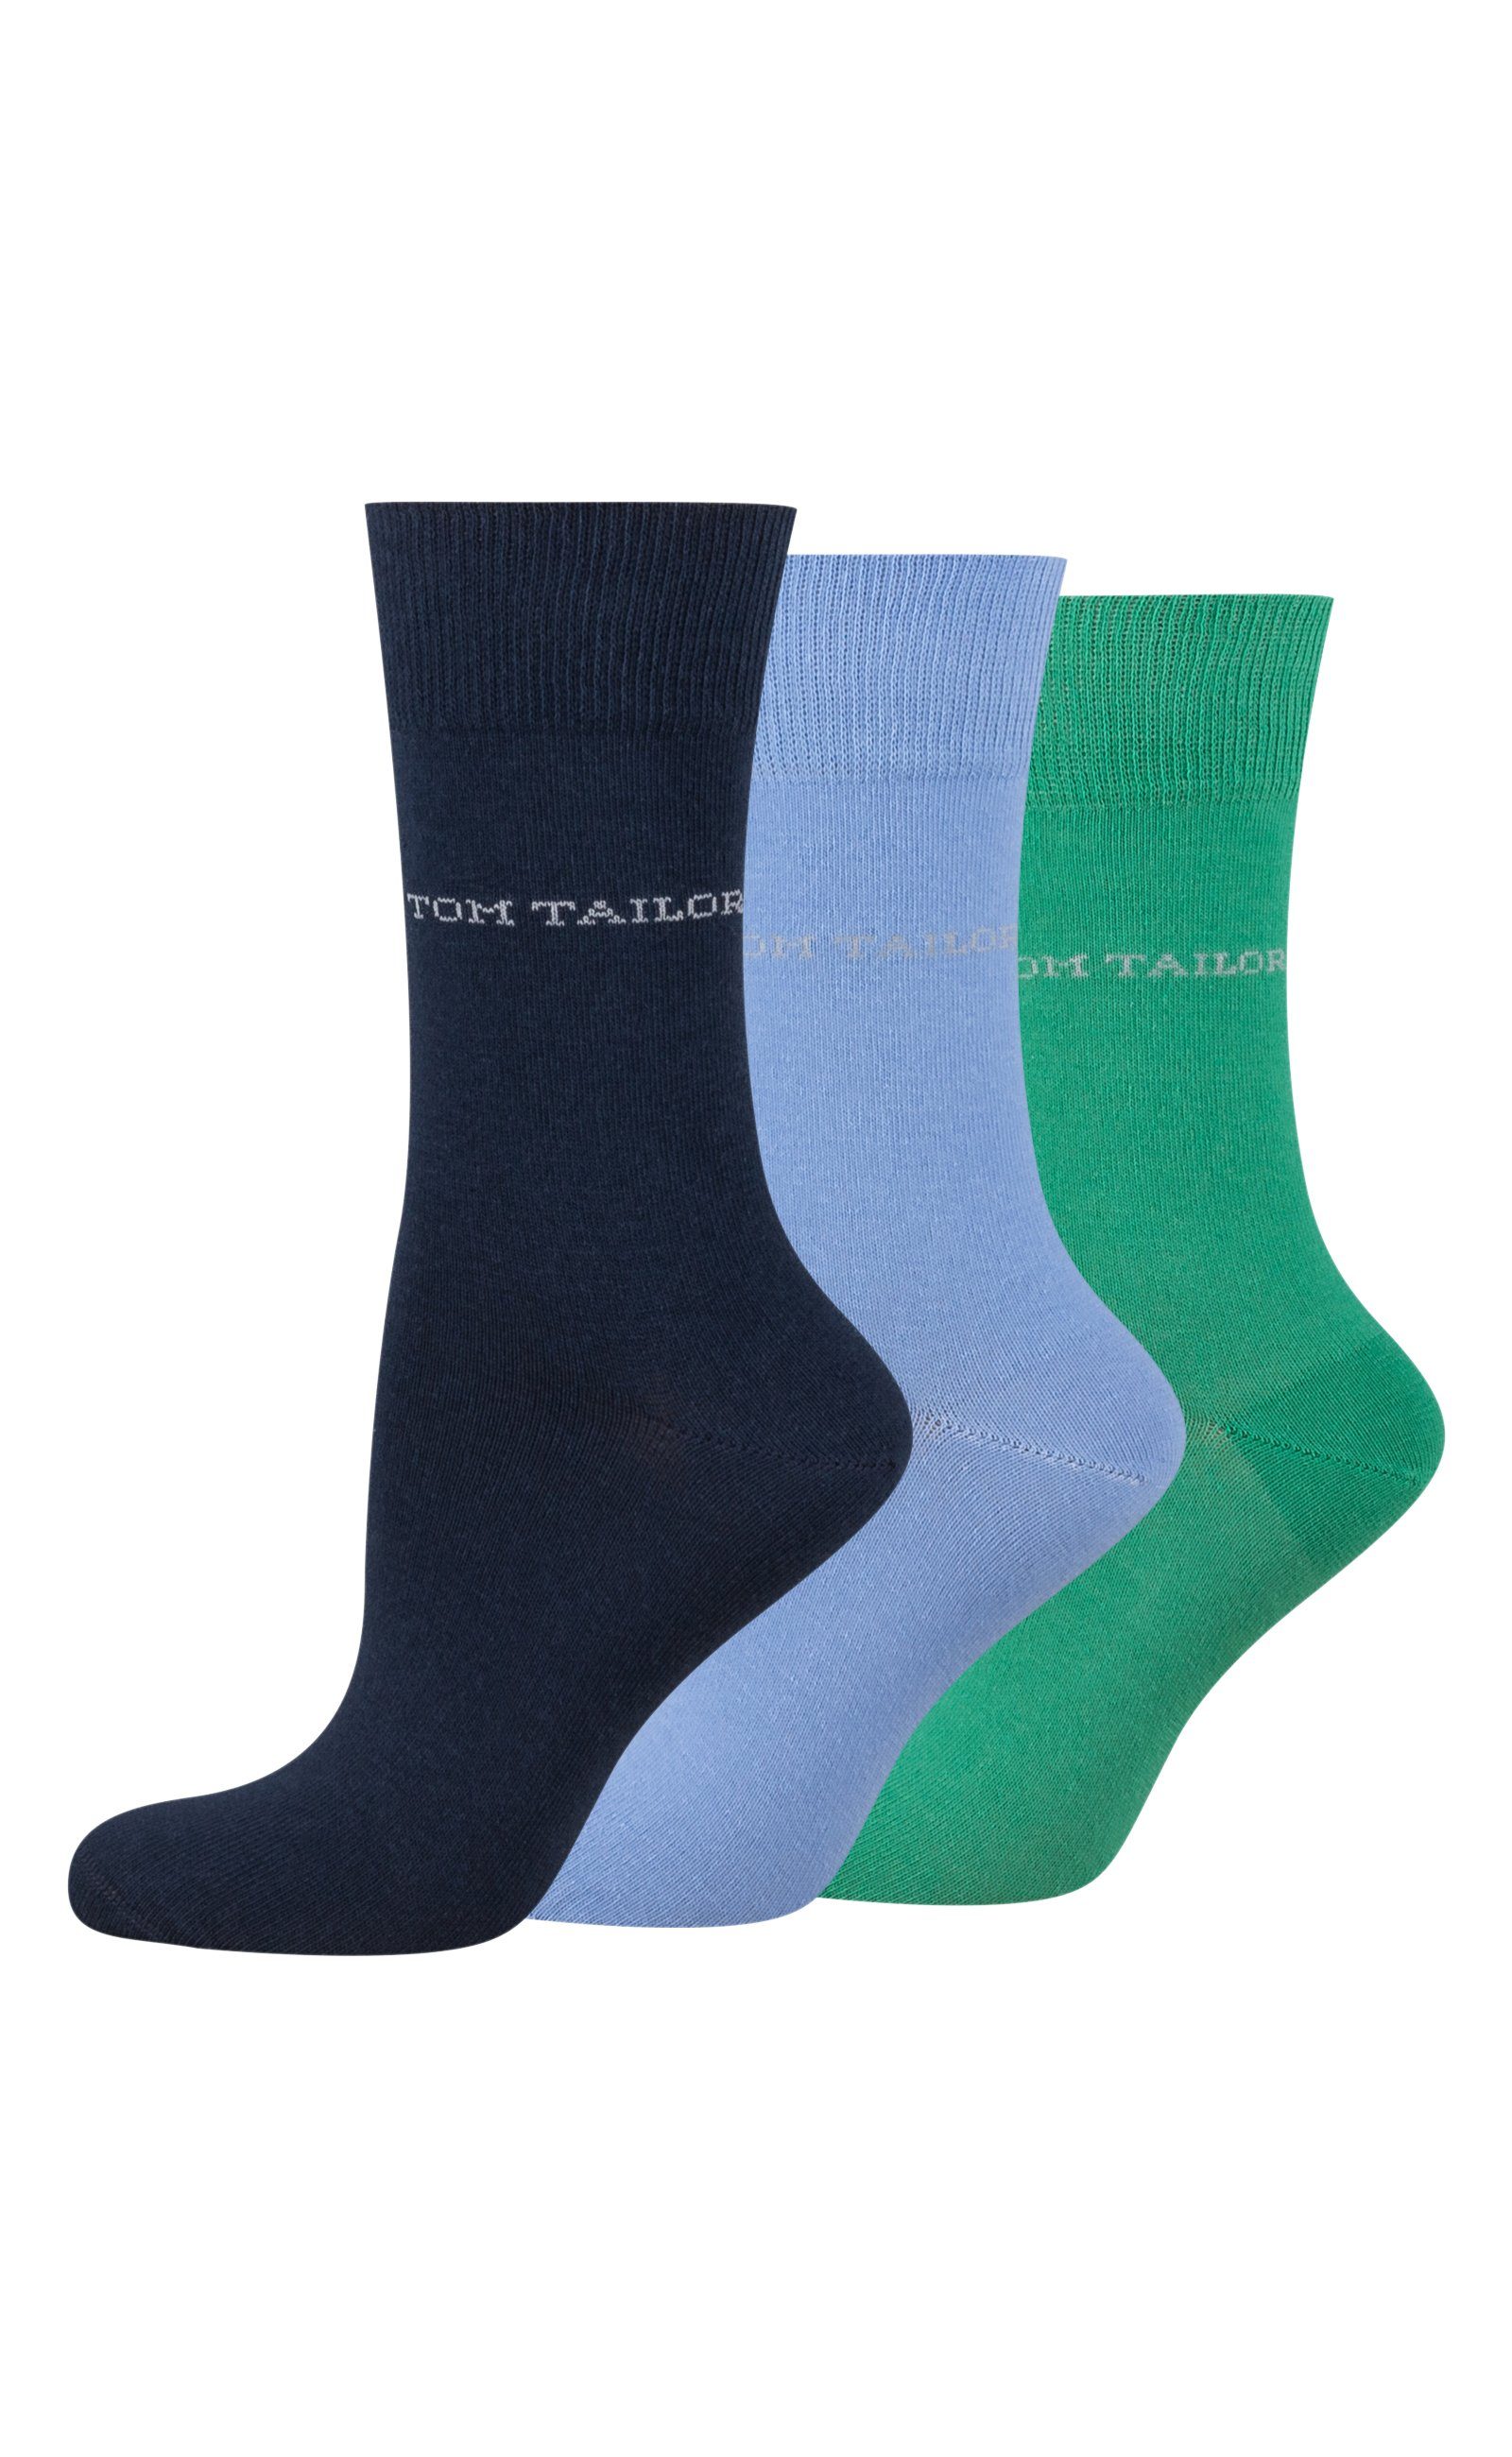 TOM TAILOR Socken 9609396042 TOM TAILOR Socken Damen – Baumwollsocken für Alltag und Freizeit blue